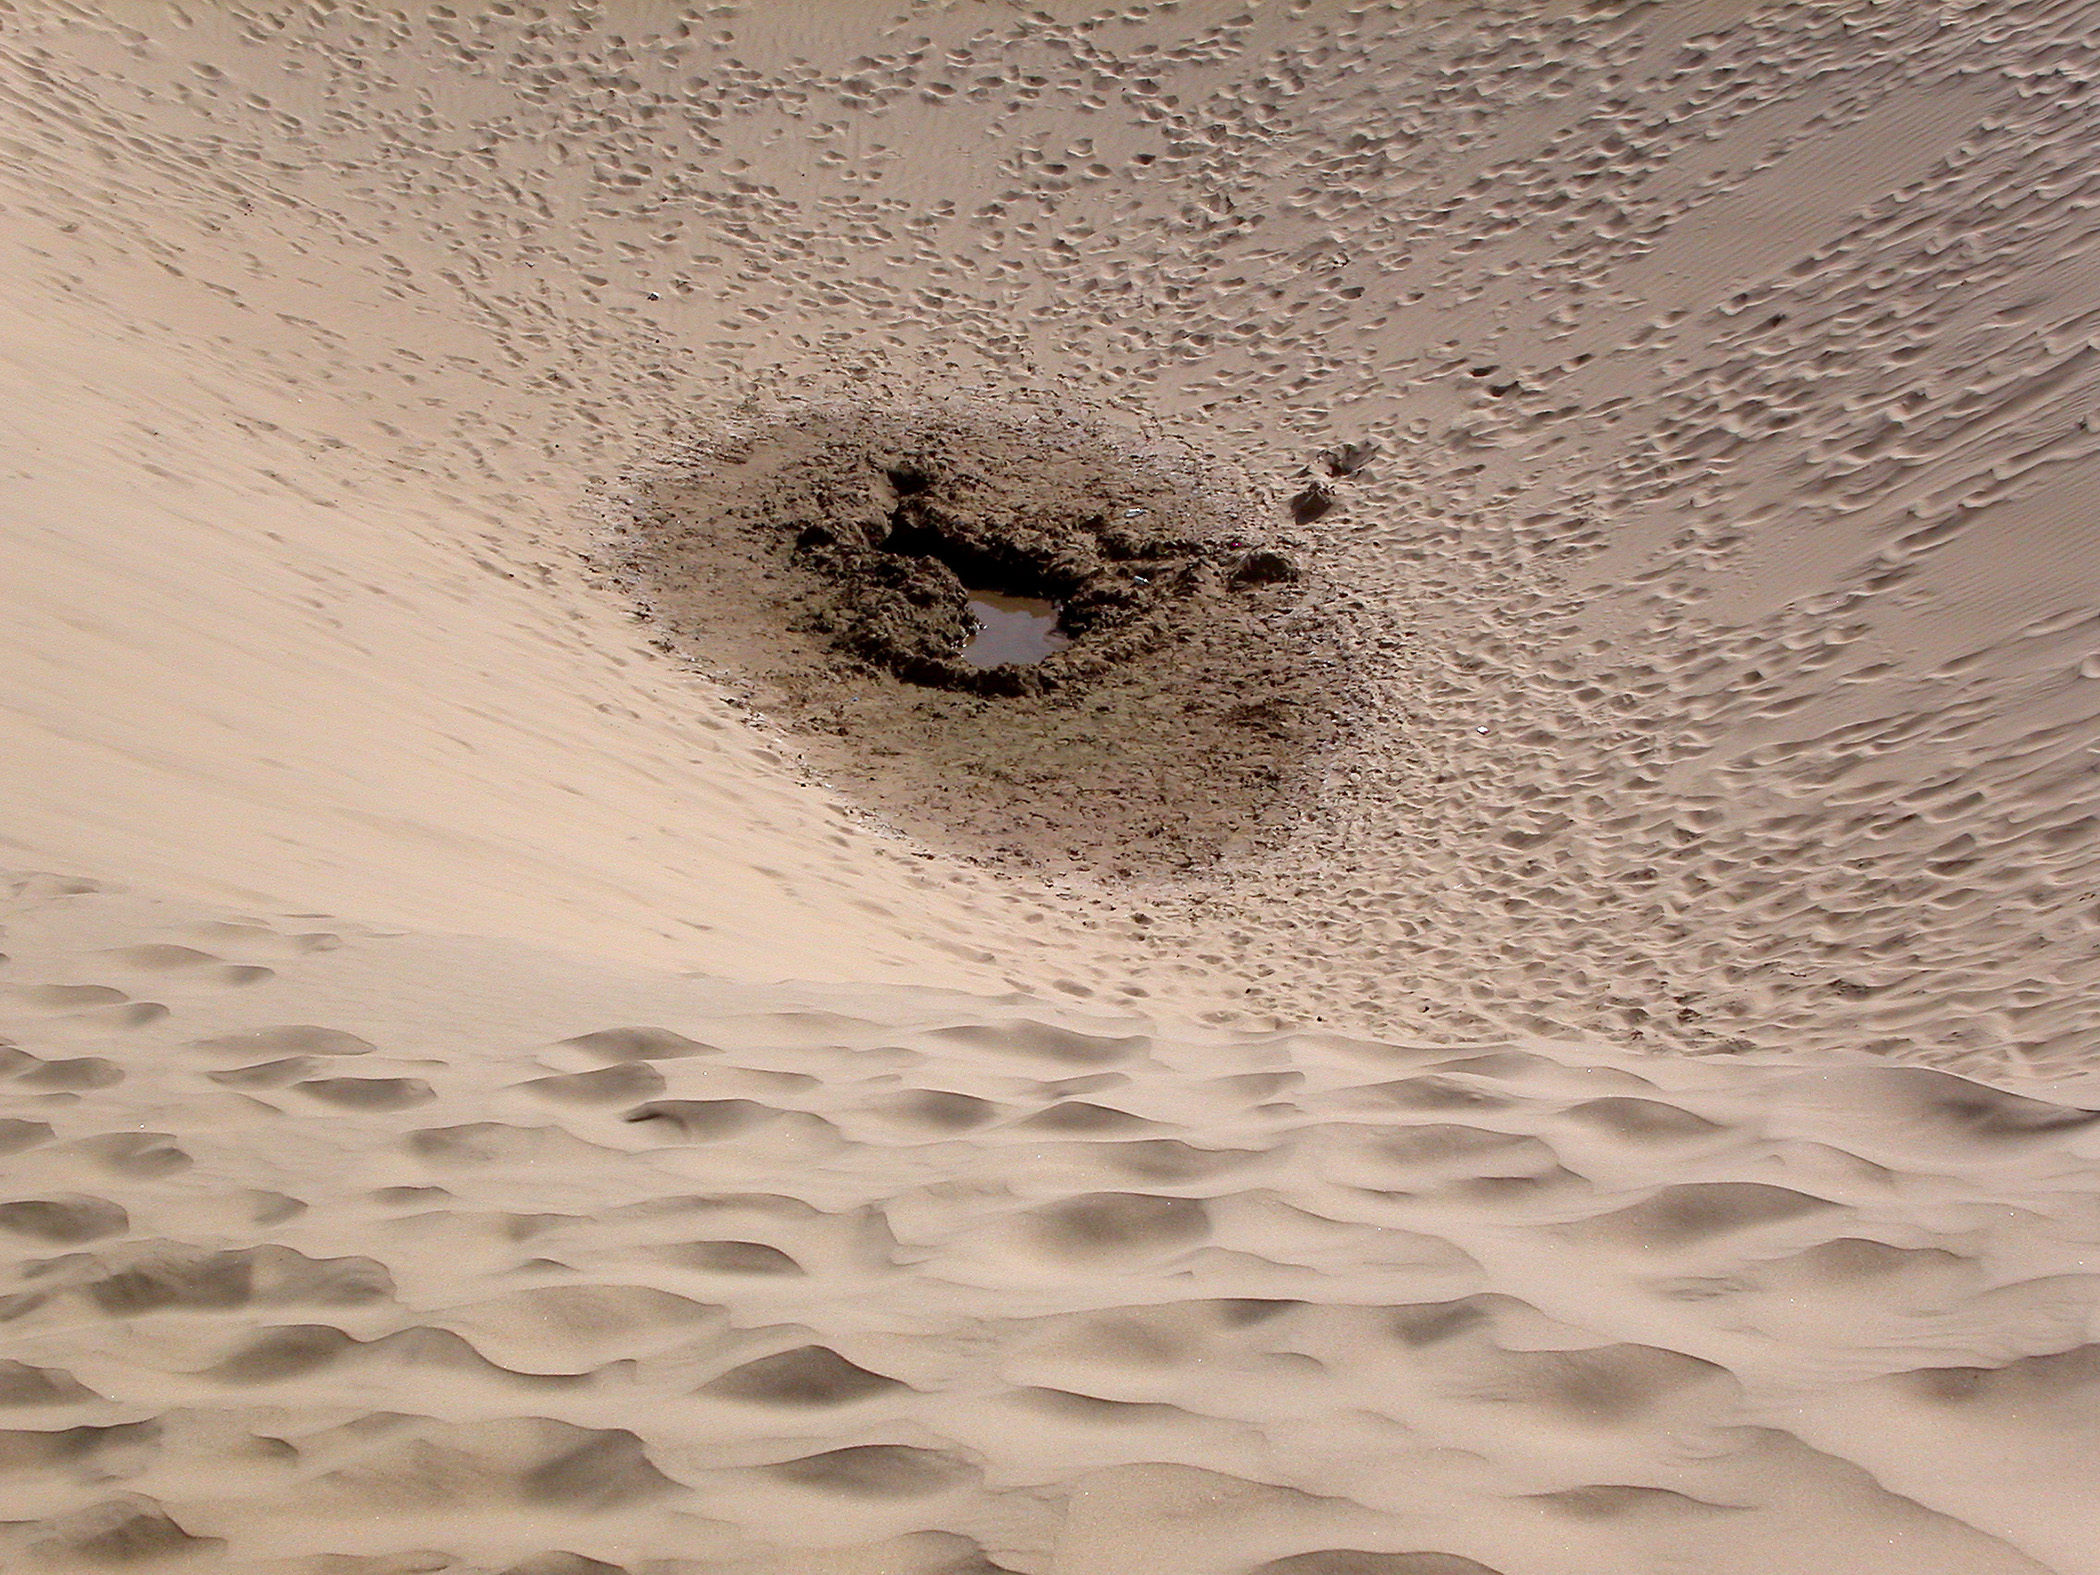 Robert Varady - Waterhole Dune in the Taklamakan Desert - Xinjiang, China, 2006